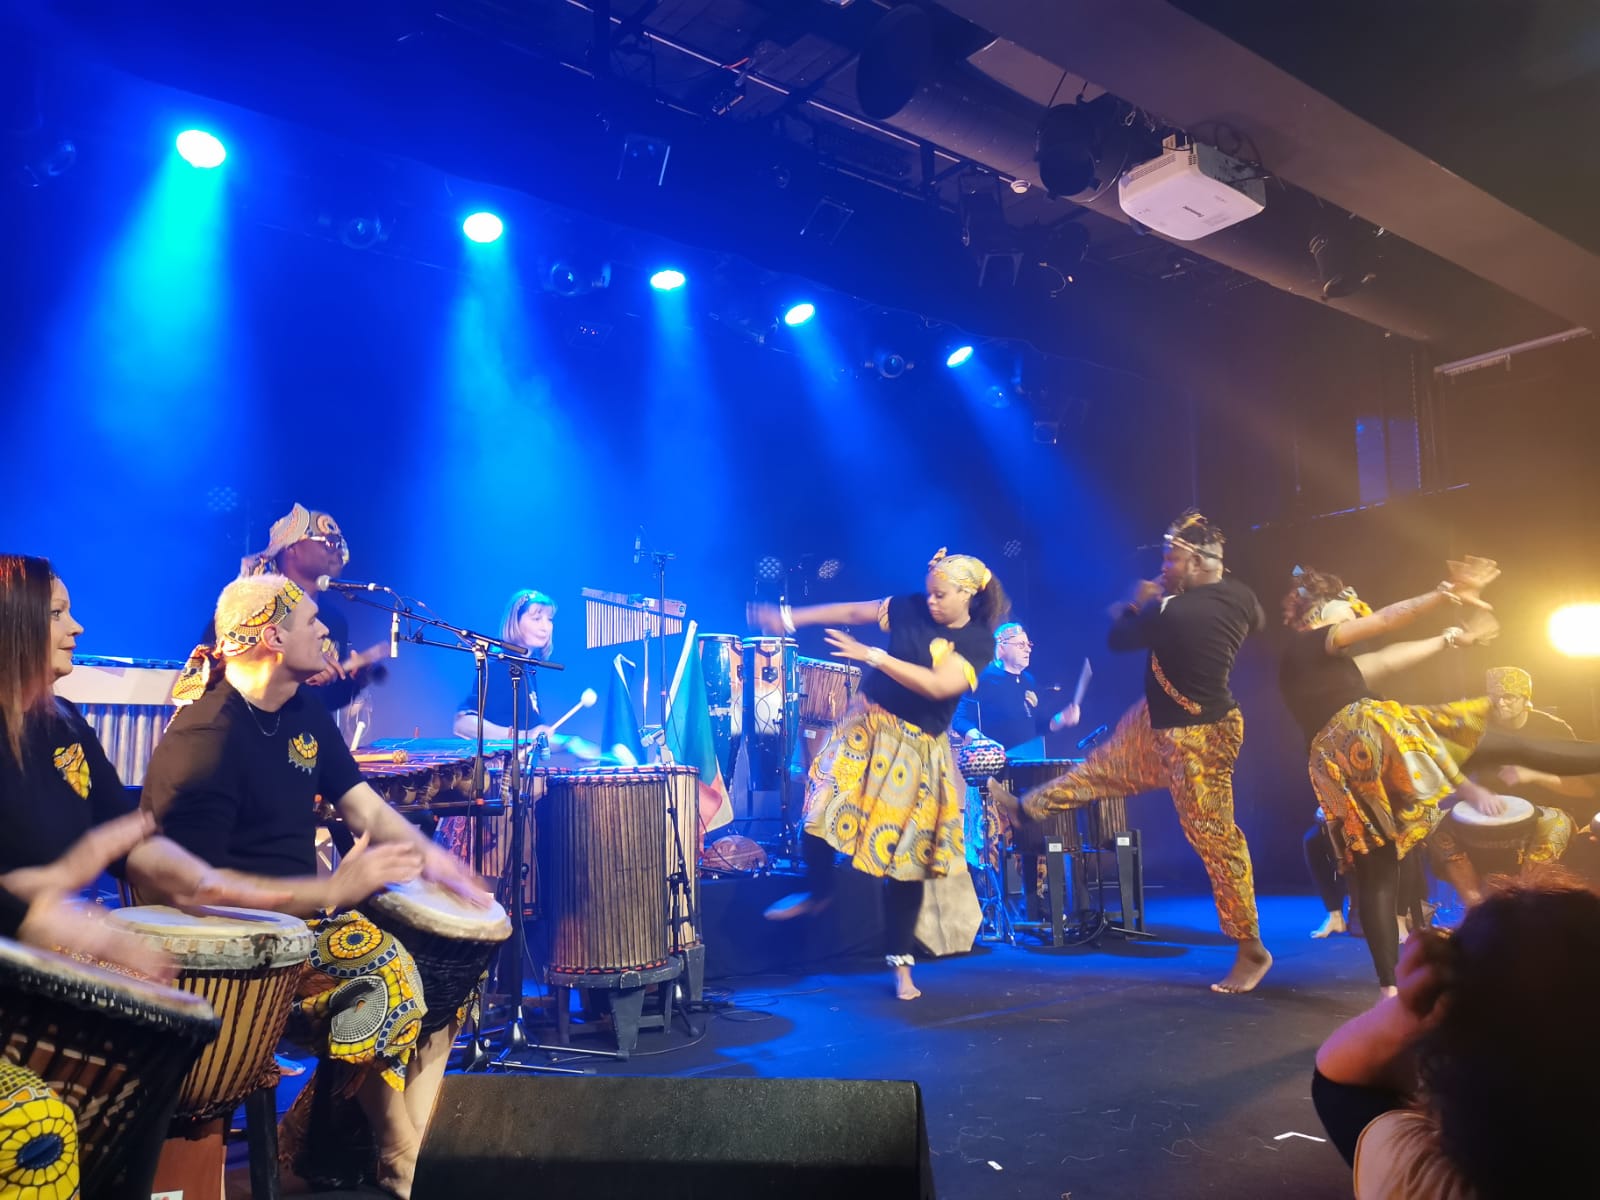 Groupe Doo Nú Wé, percussions et danse africaine, sous la direction de Freddy Tingo